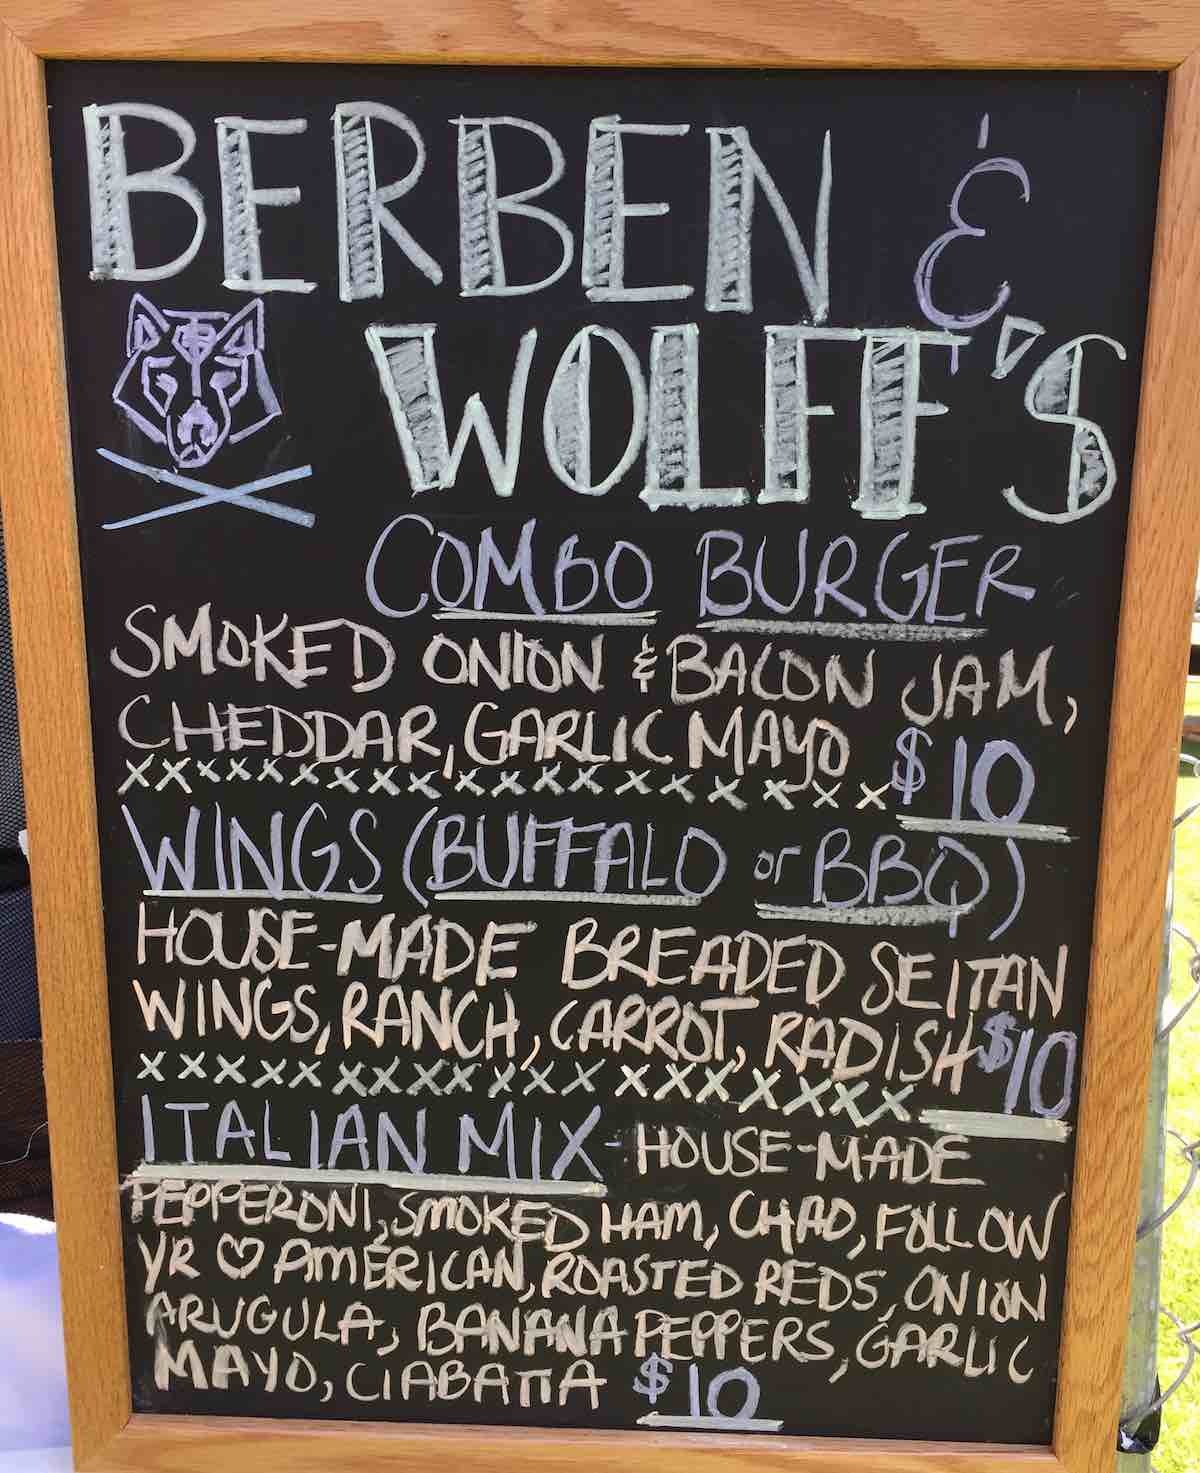 Berben & Wolff’s